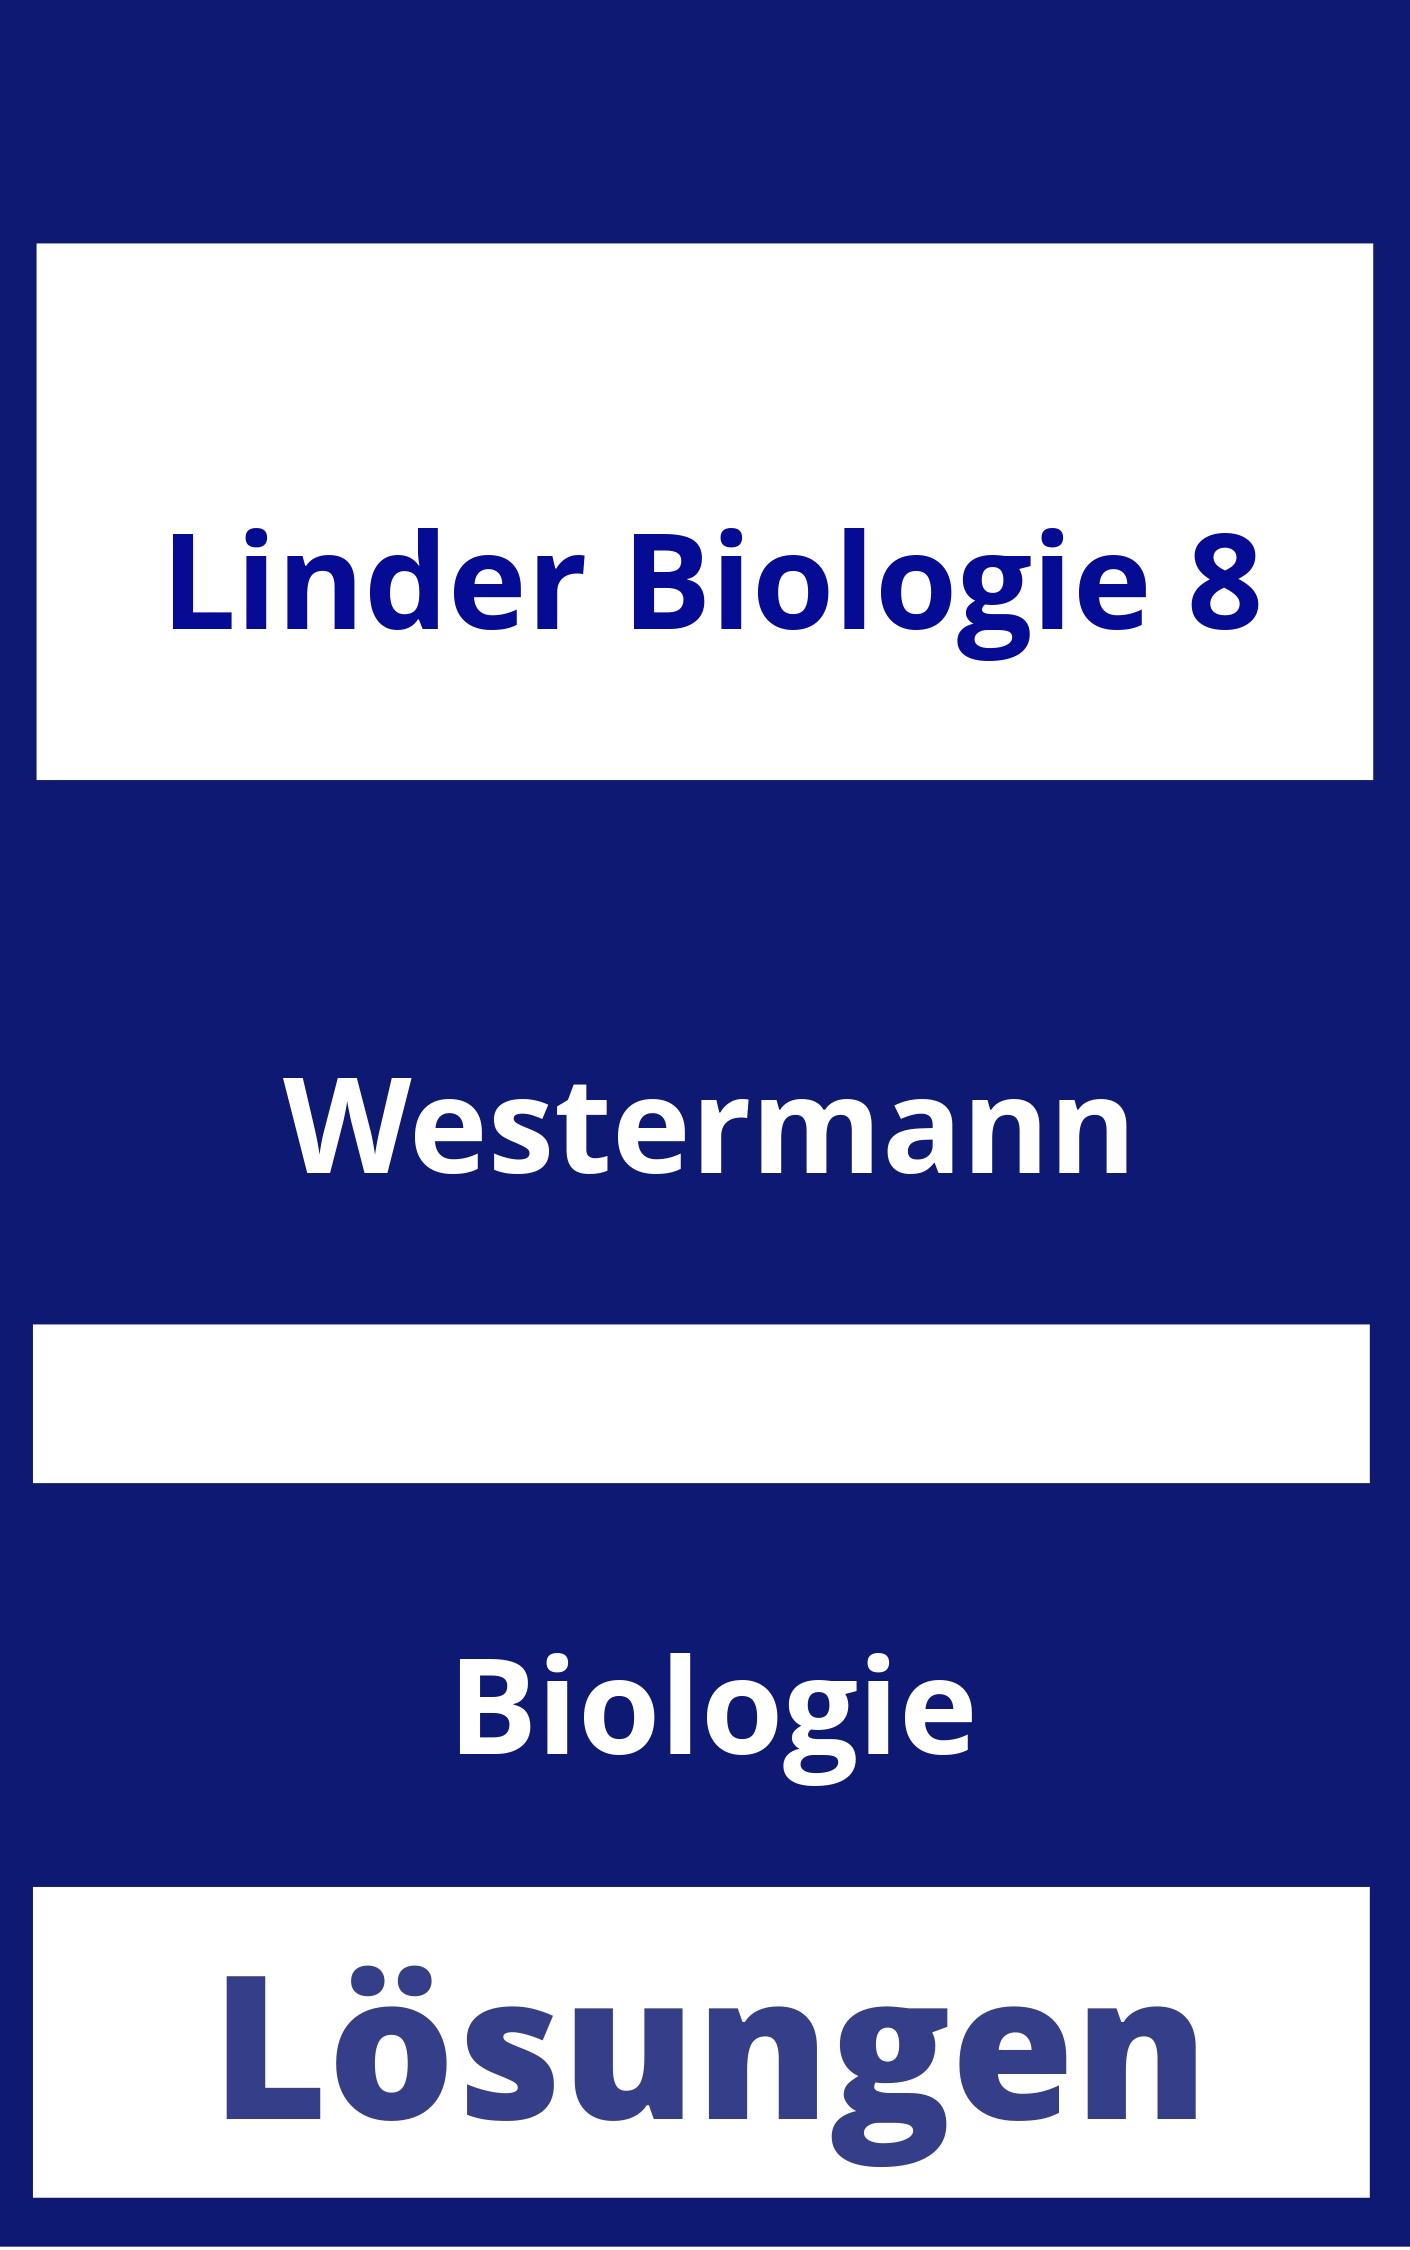 Linder Biologie 8